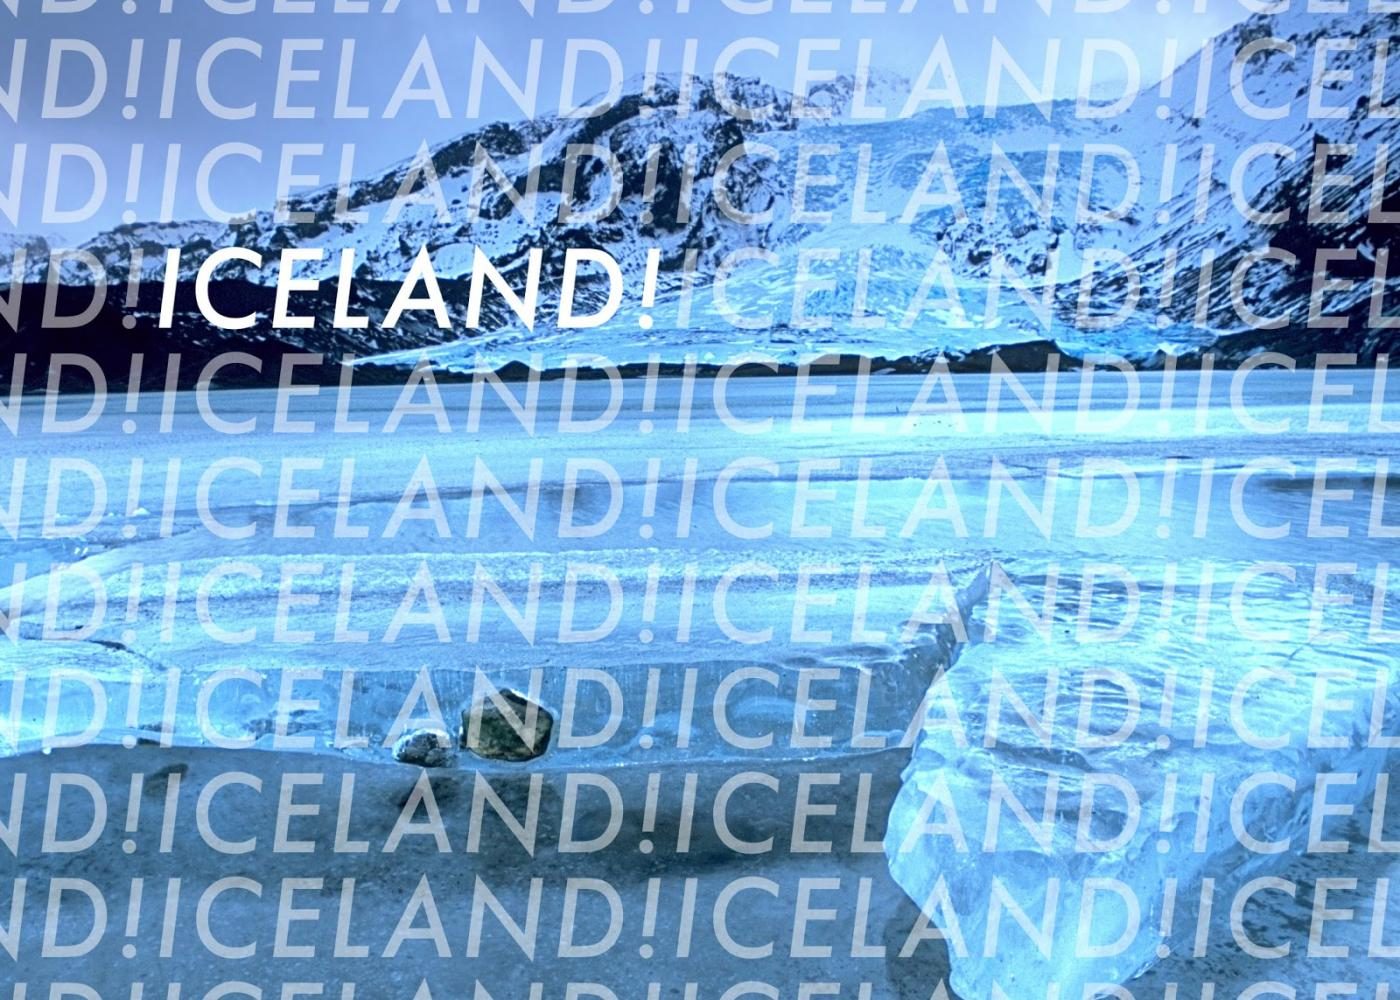 ICELAND, ICELAND, ICELAND!